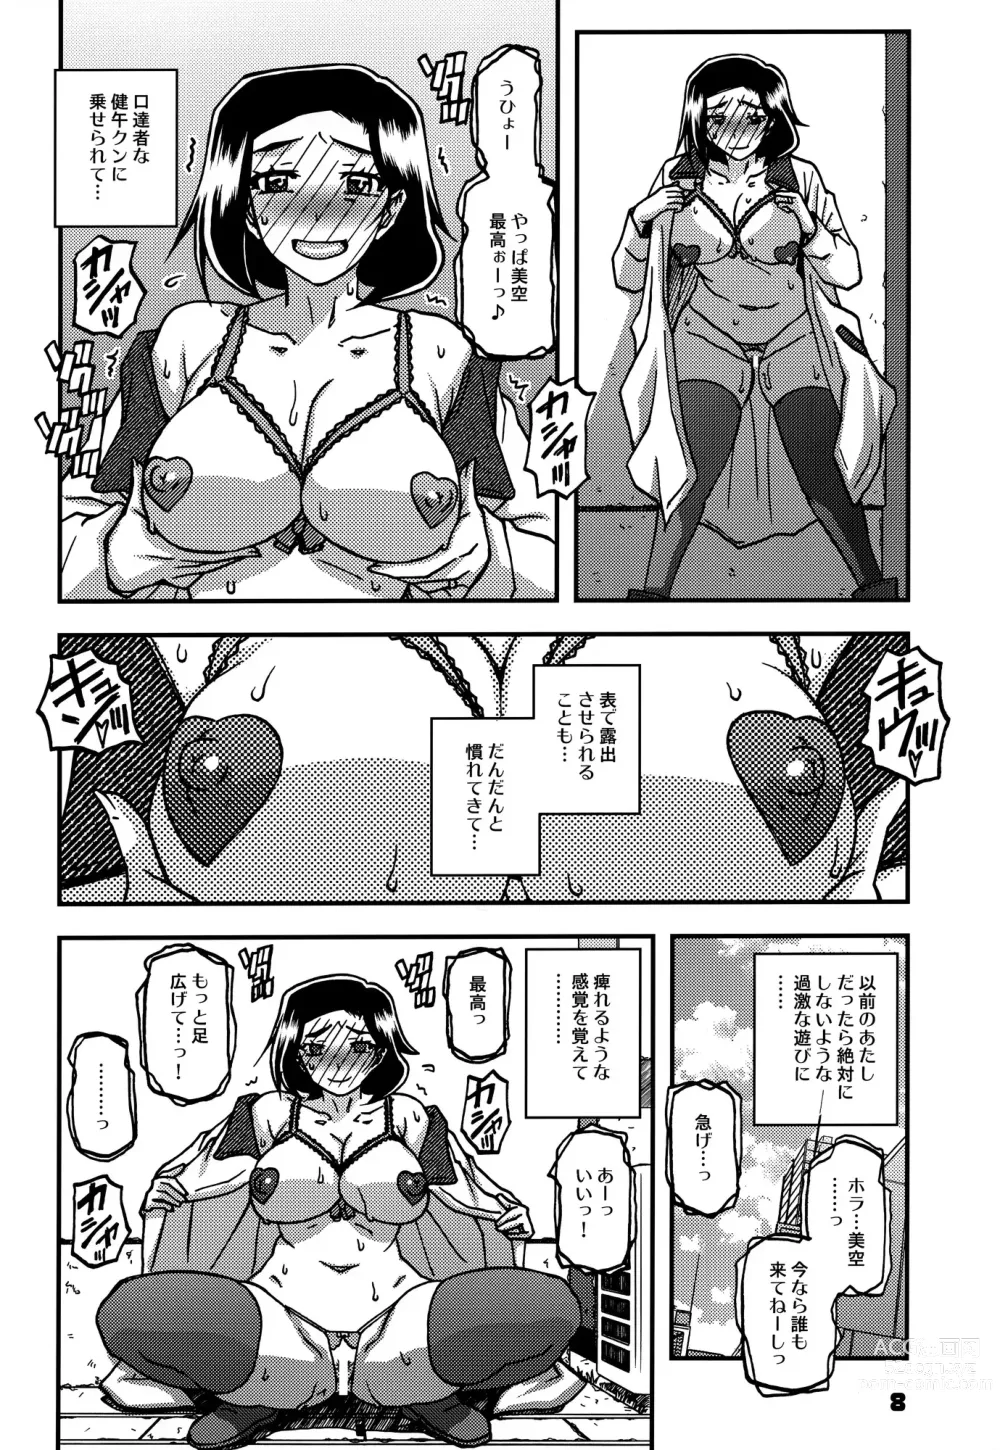 Page 7 of doujinshi Akebi no Mi - Misora AFTER